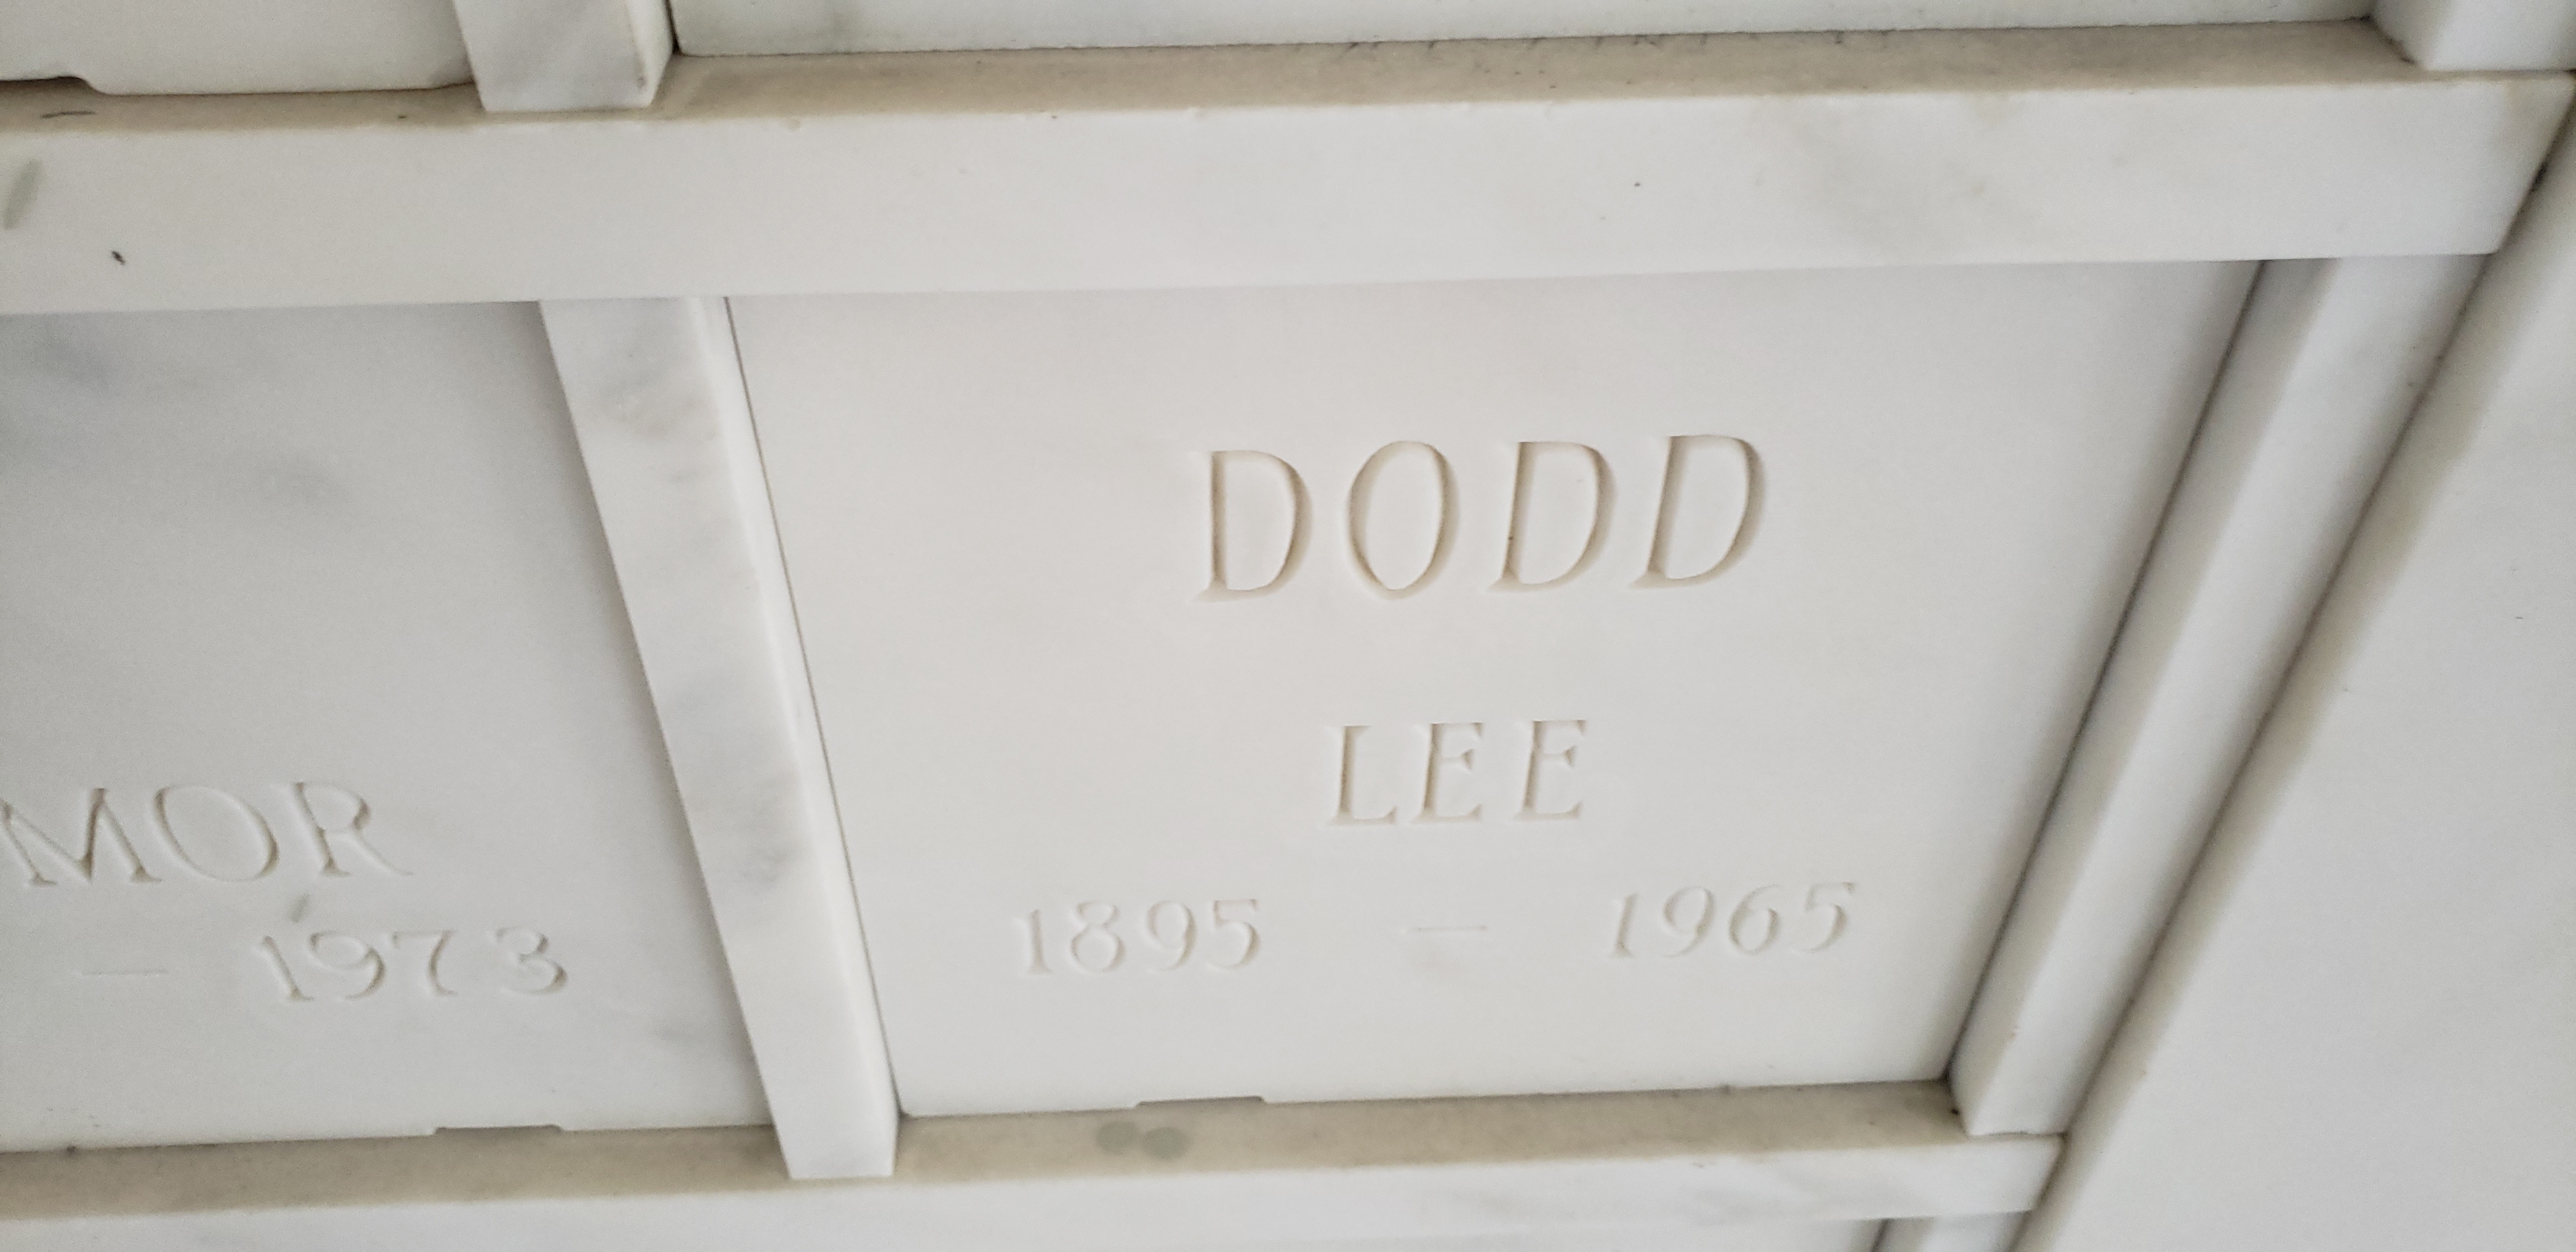 Lee Dodd